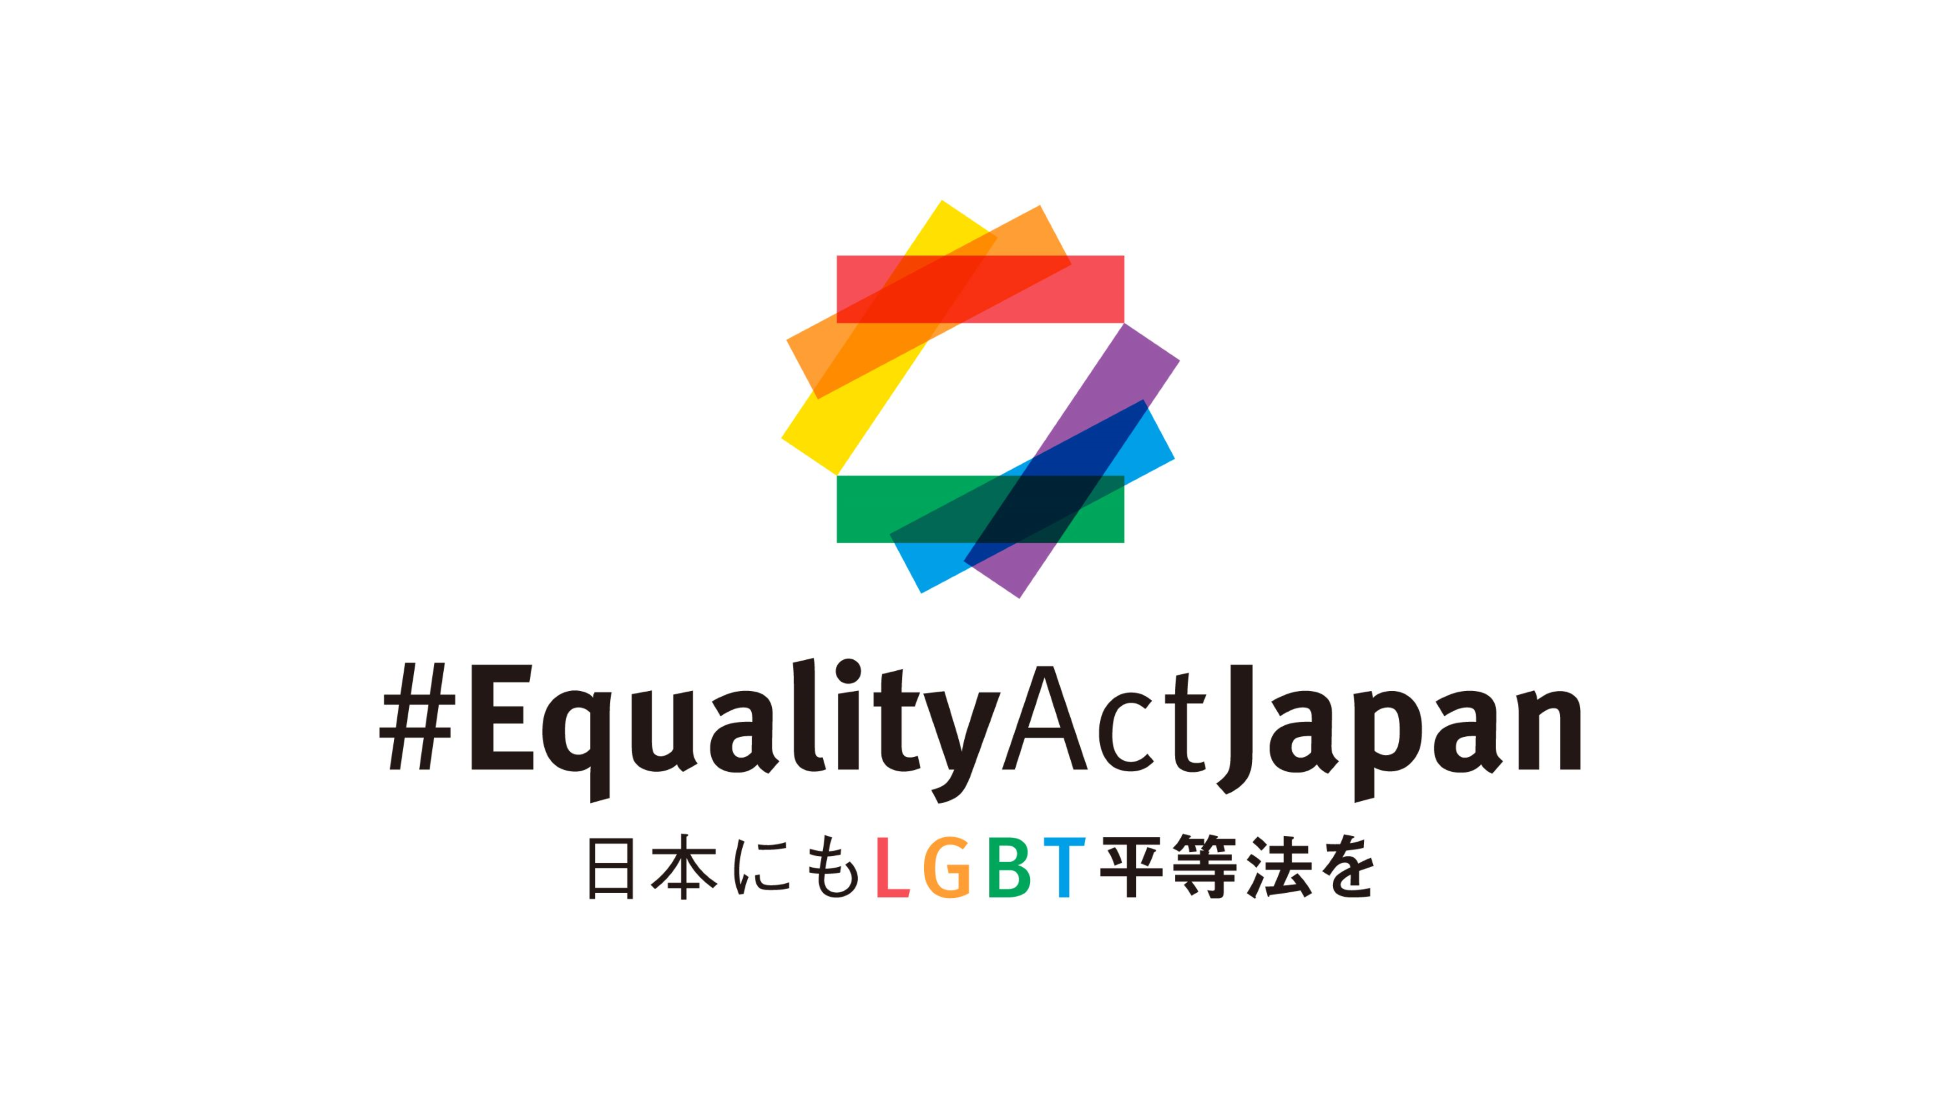 ヤフー、日本における「LGBT平等法」の制定を目指すキャンペーン 「ビジネスによるLGBT平等サポート宣言」への賛同を表明